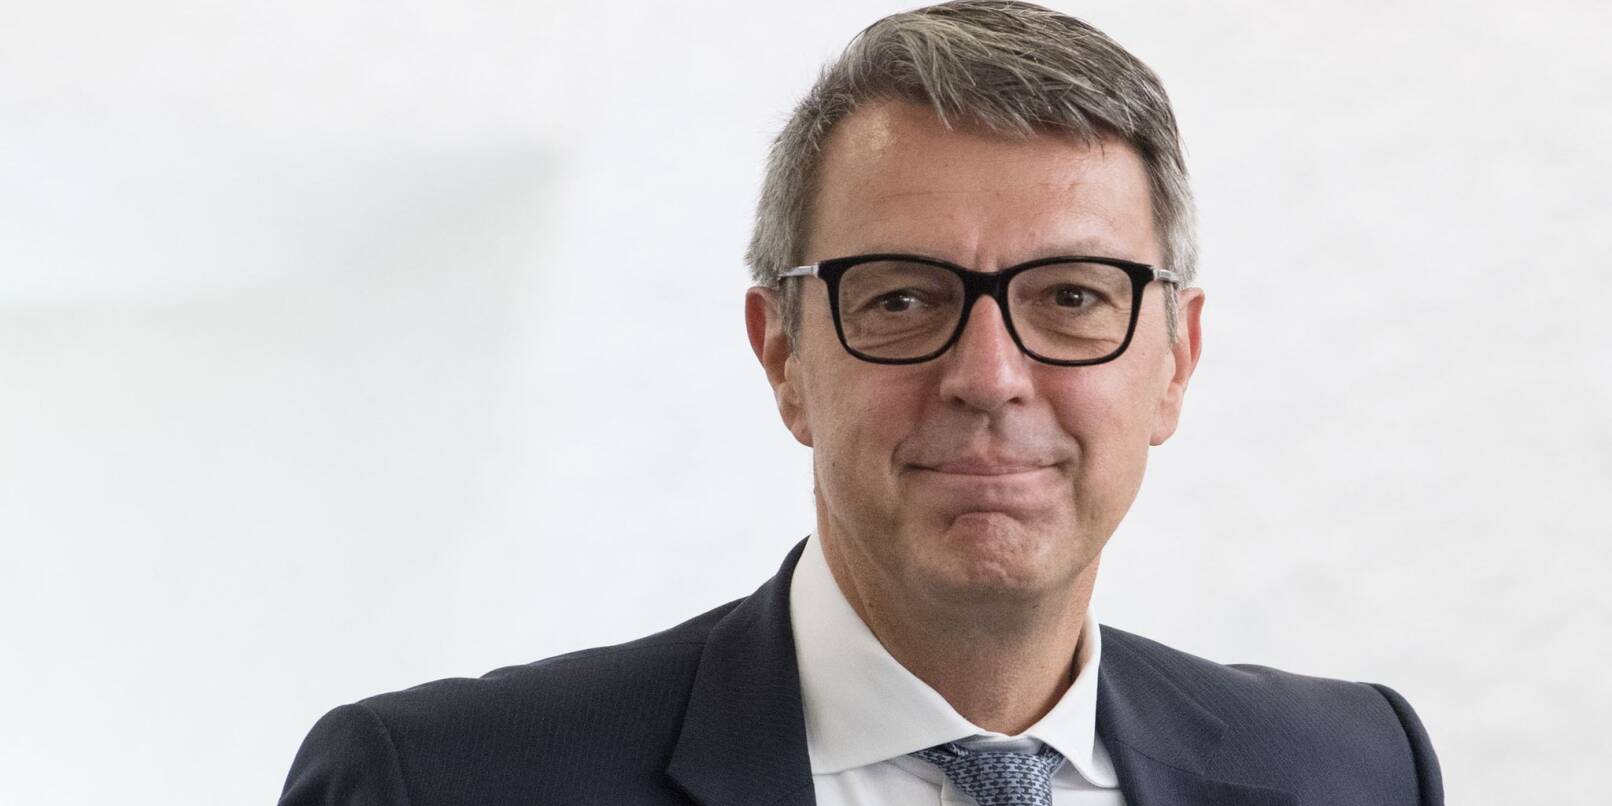 Der 53-jährige Betriebswirt Arndt Geiwitz ist einer der bekanntesten Insolvenzexperten Deutschlands.